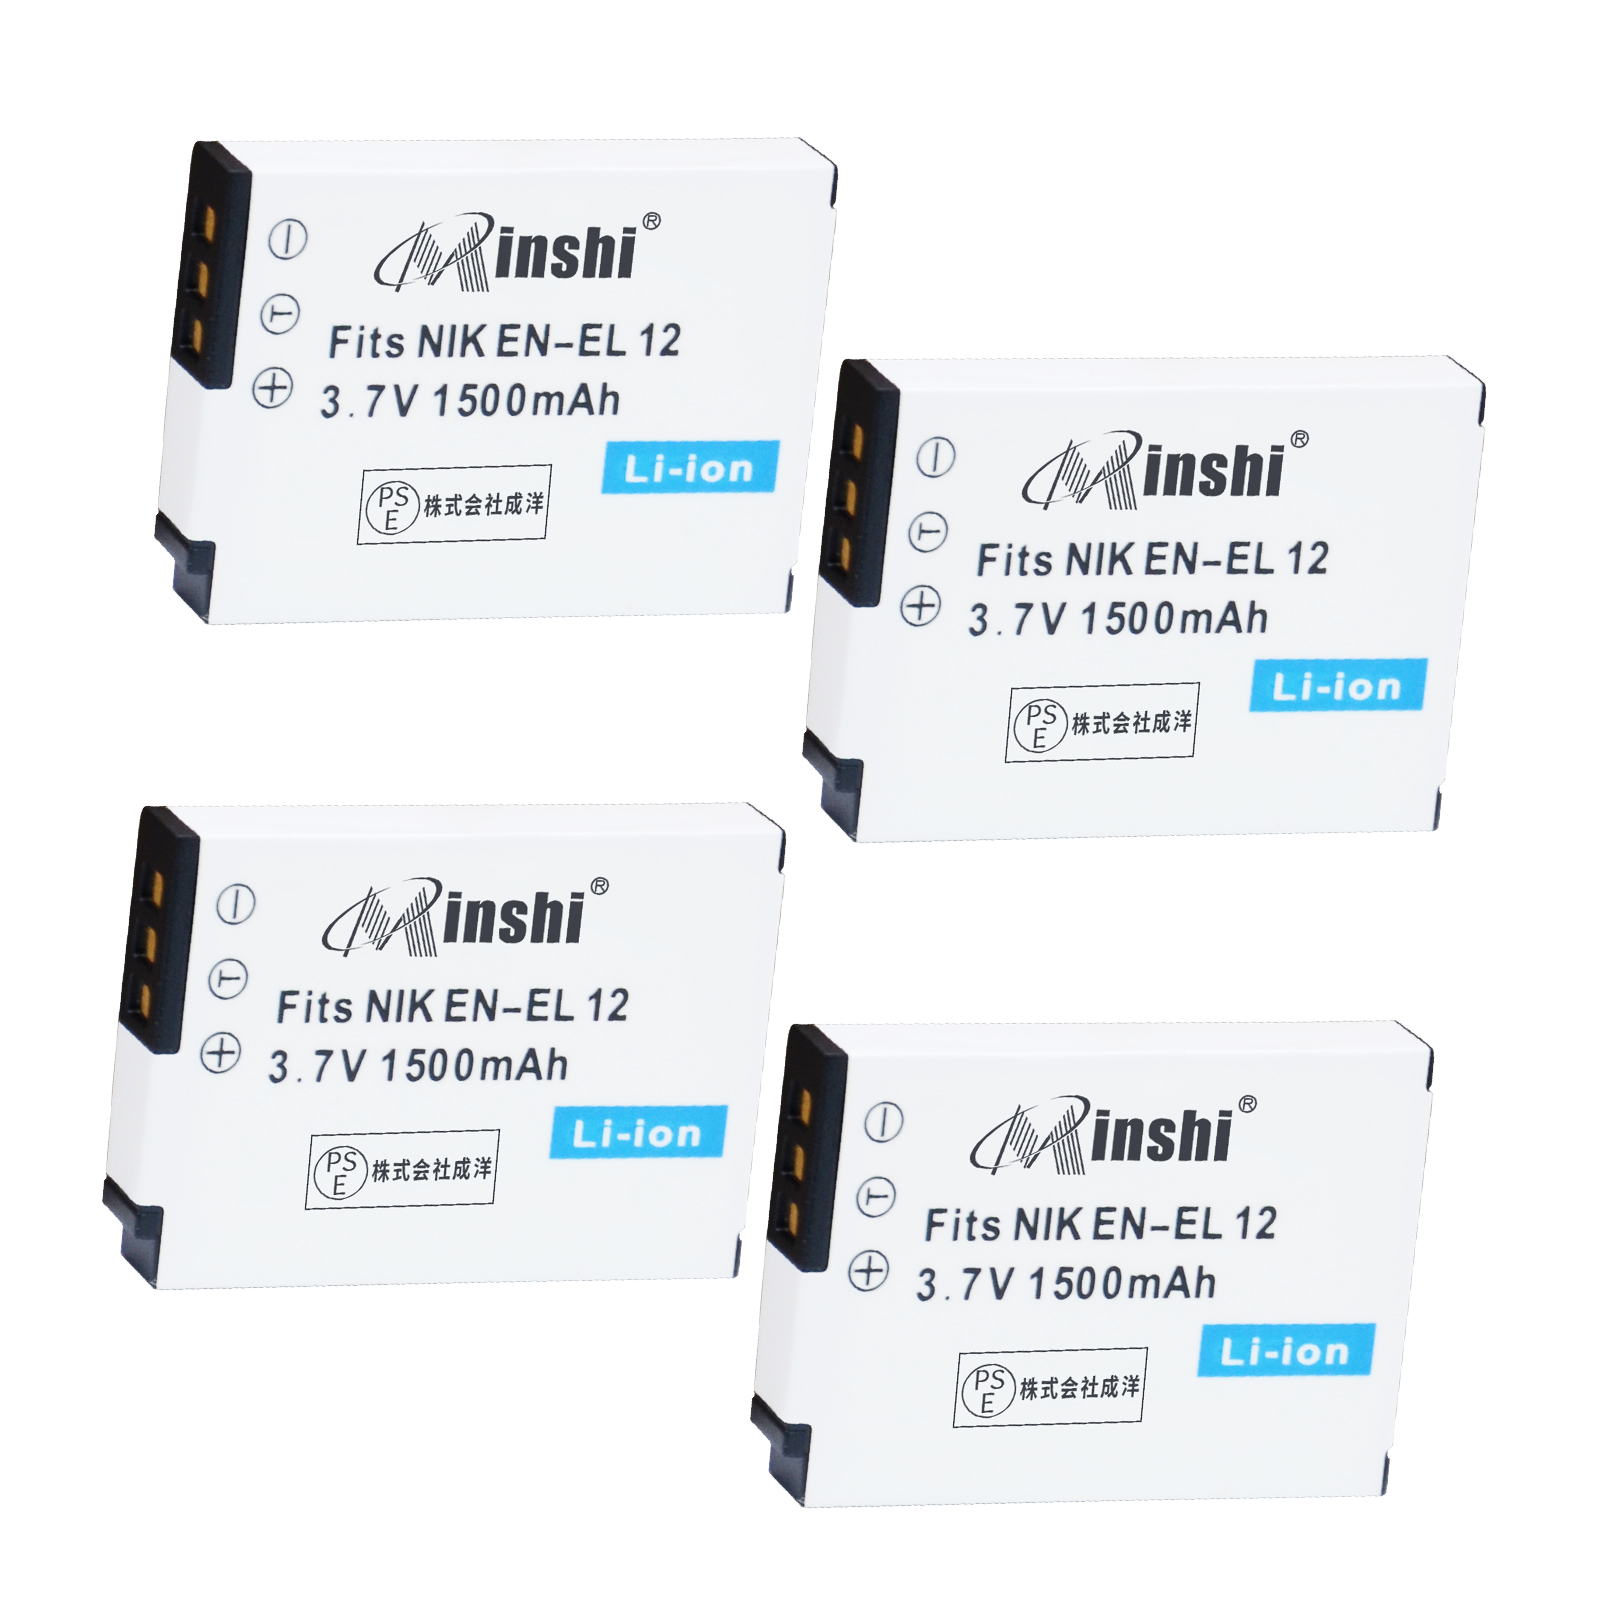 【4個】minshi NIKON COOLPIX S9300 AW100 【1500mAh 3.7V】PSE認定済 高品質 EN-EL12 交換用バッテリー